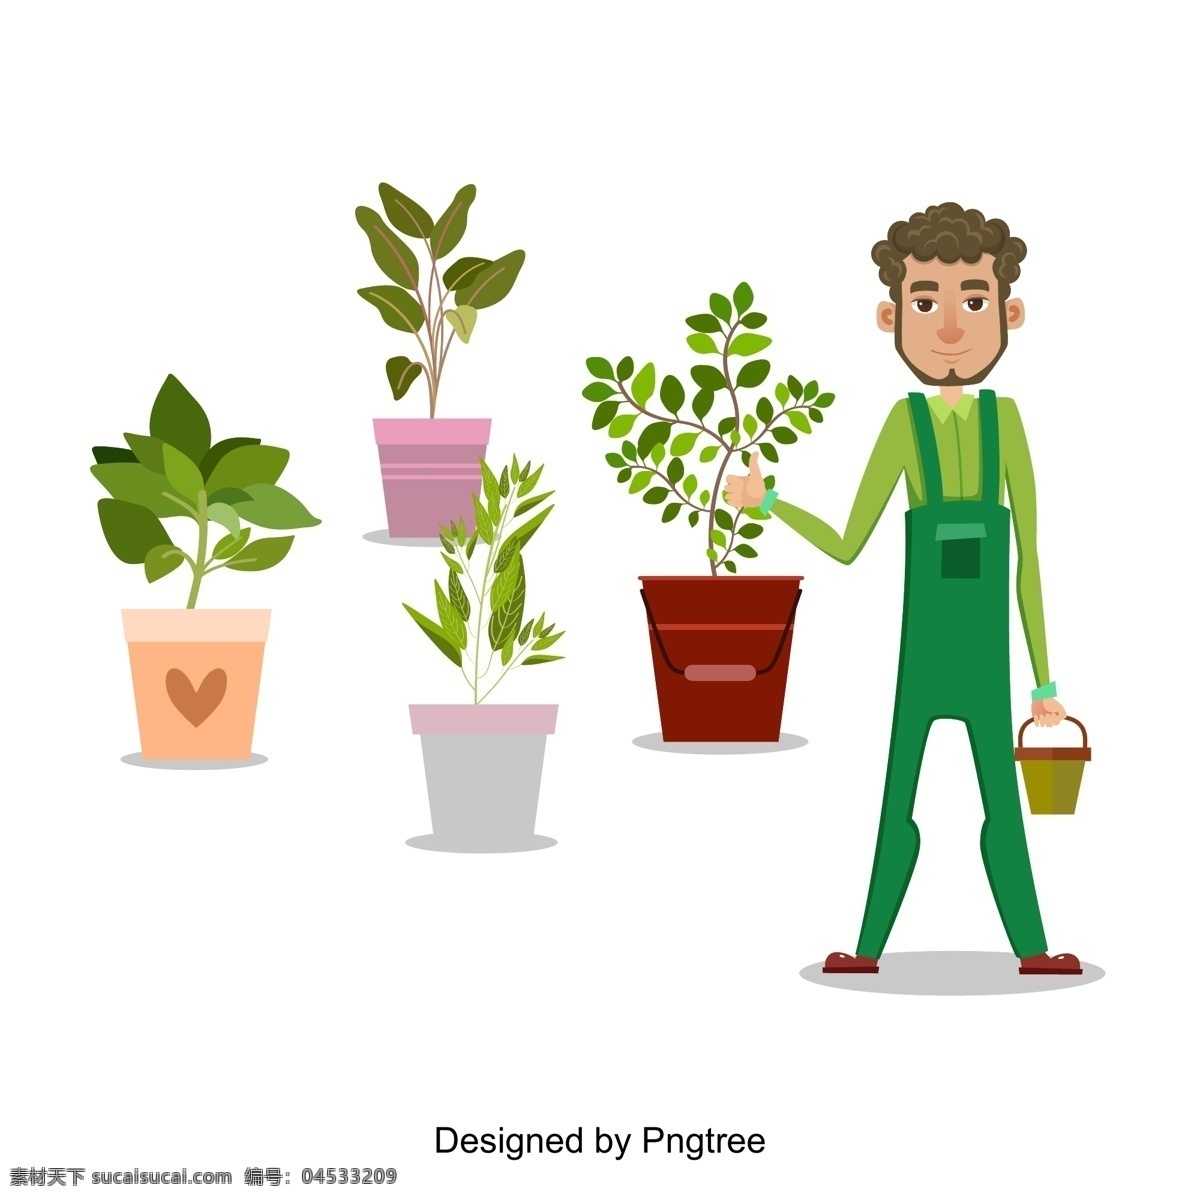 卡通 手绘 园丁 简单 风格 植物 创意 图形 画报 工人